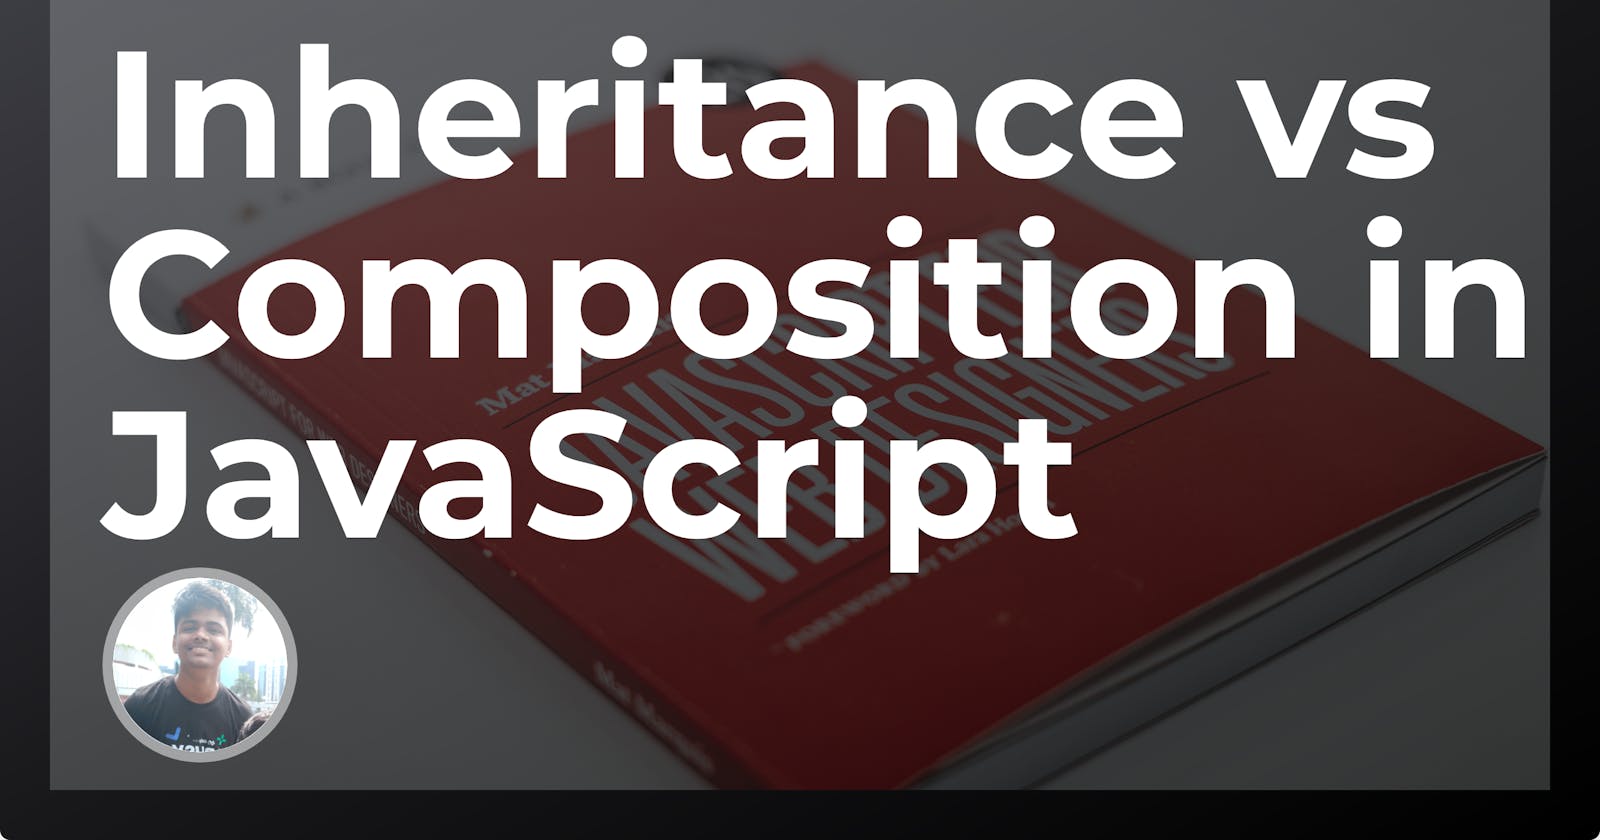 Inheritance vs Composition on JavaScript